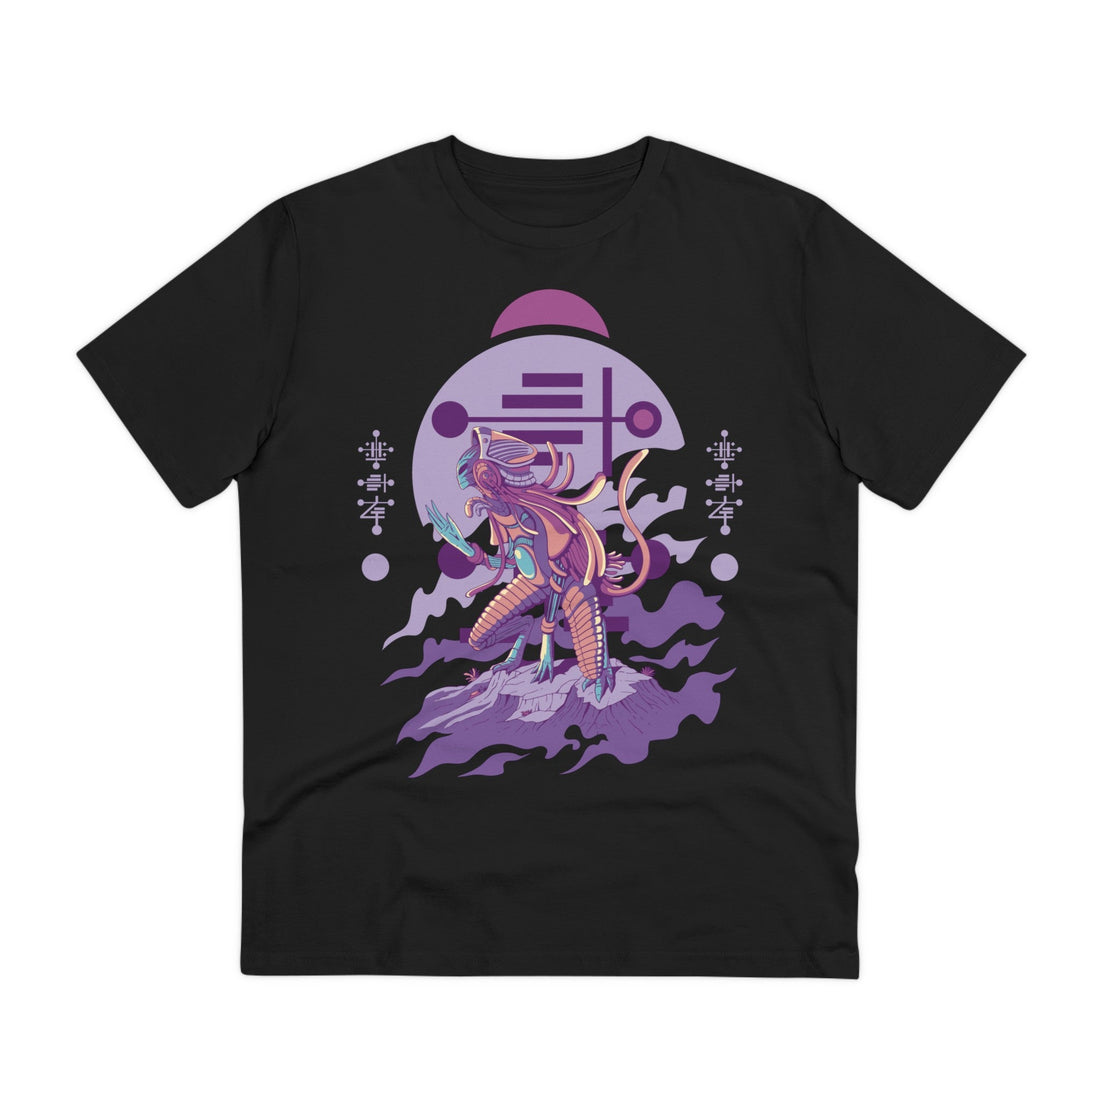 Printify T-Shirt Black / 2XS Alien Creature kneeling - Alien Warrior - Front Design